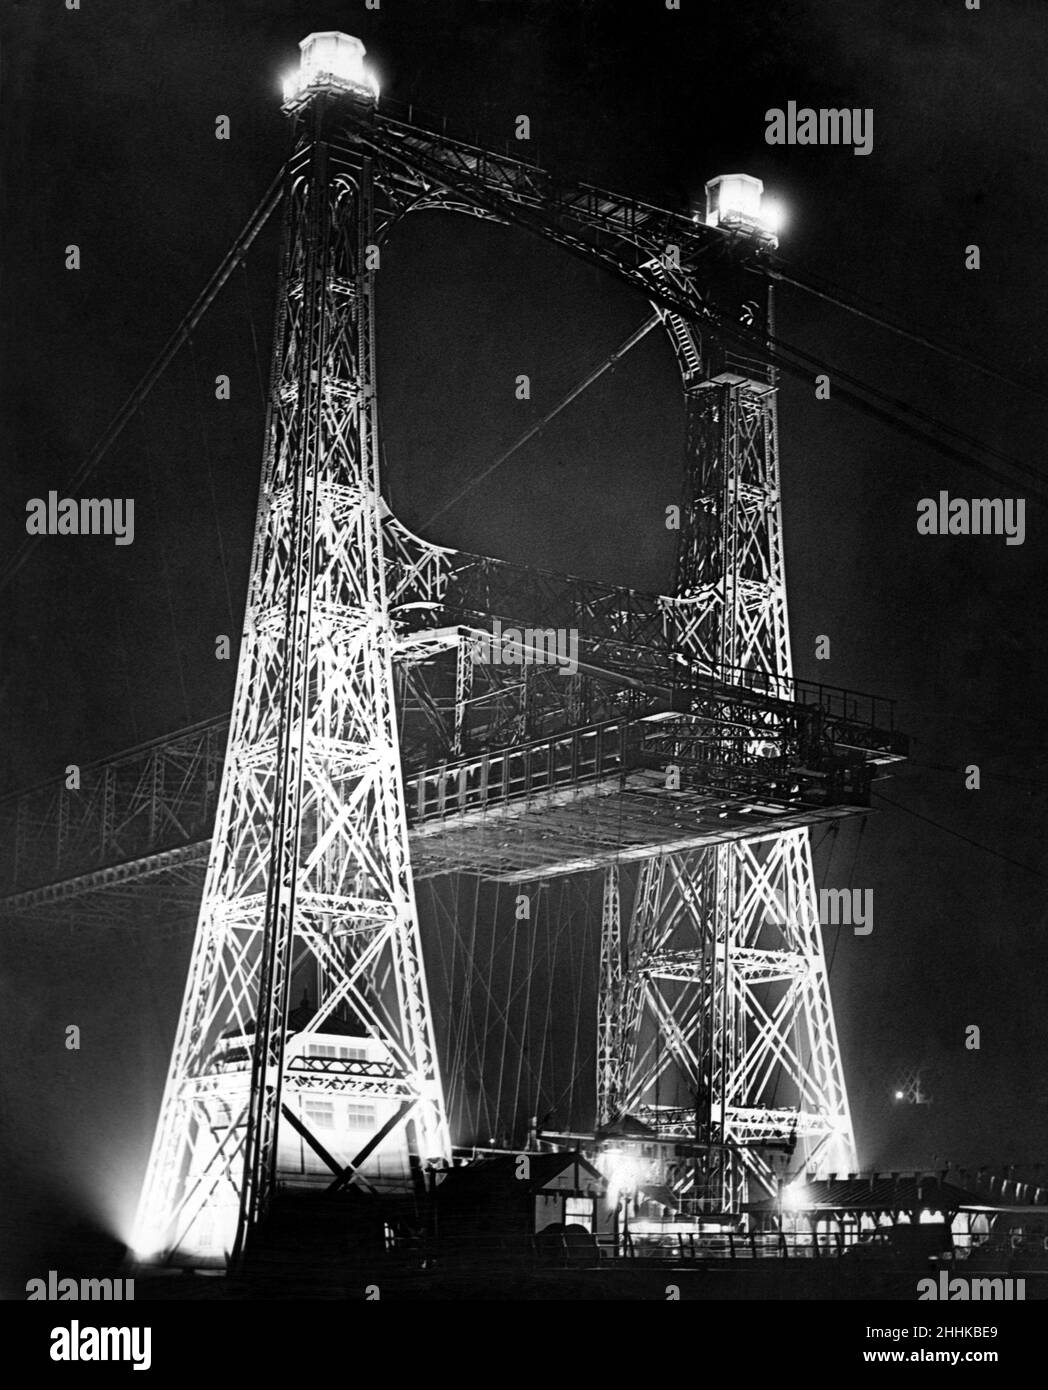 Die Widnes-Runcorn Transporter Bridge, durch Flutlicht, die Widnes und Runcorn verbindet. Sie wurde im Rahmen der Feierlichkeiten zum Silberjubiläum von König Georg V. im Mai 1935 von Flutlicht beleuchtet. Stockfoto